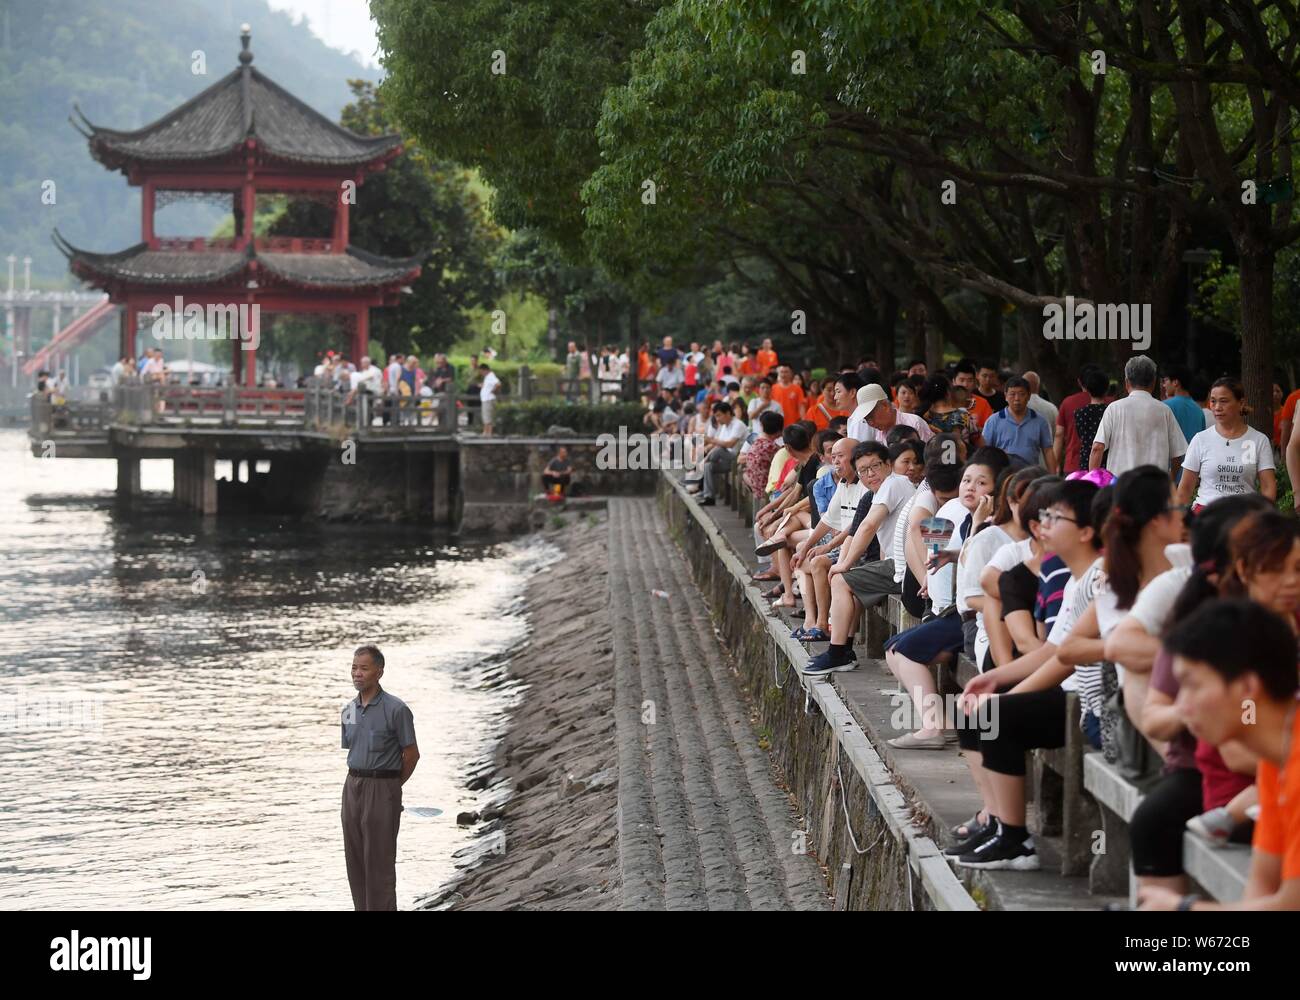 Les touristes s'asseoir le long de la rivière, Xinanjiang où la température de l'eau reste à environ 17 degrés Celsius, à un endroit pittoresque dans la ville de Hangzhou, Hangzhou c Banque D'Images